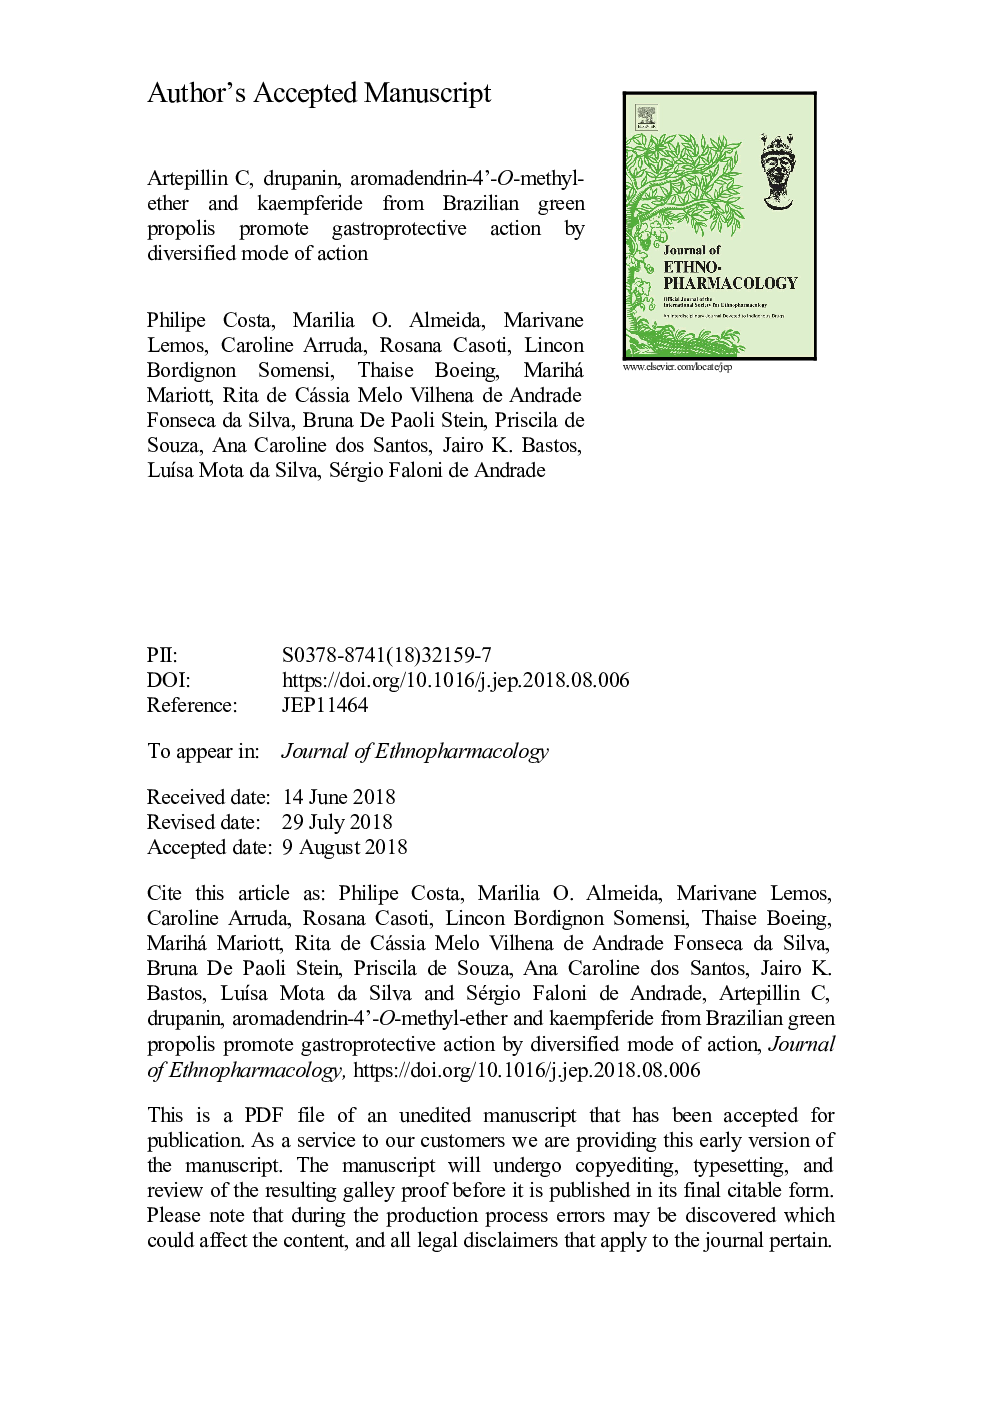 Artepillin C, drupanin, aromadendrin-4â²-O-methyl-ether and kaempferide from Brazilian green propolis promote gastroprotective action by diversified mode of action